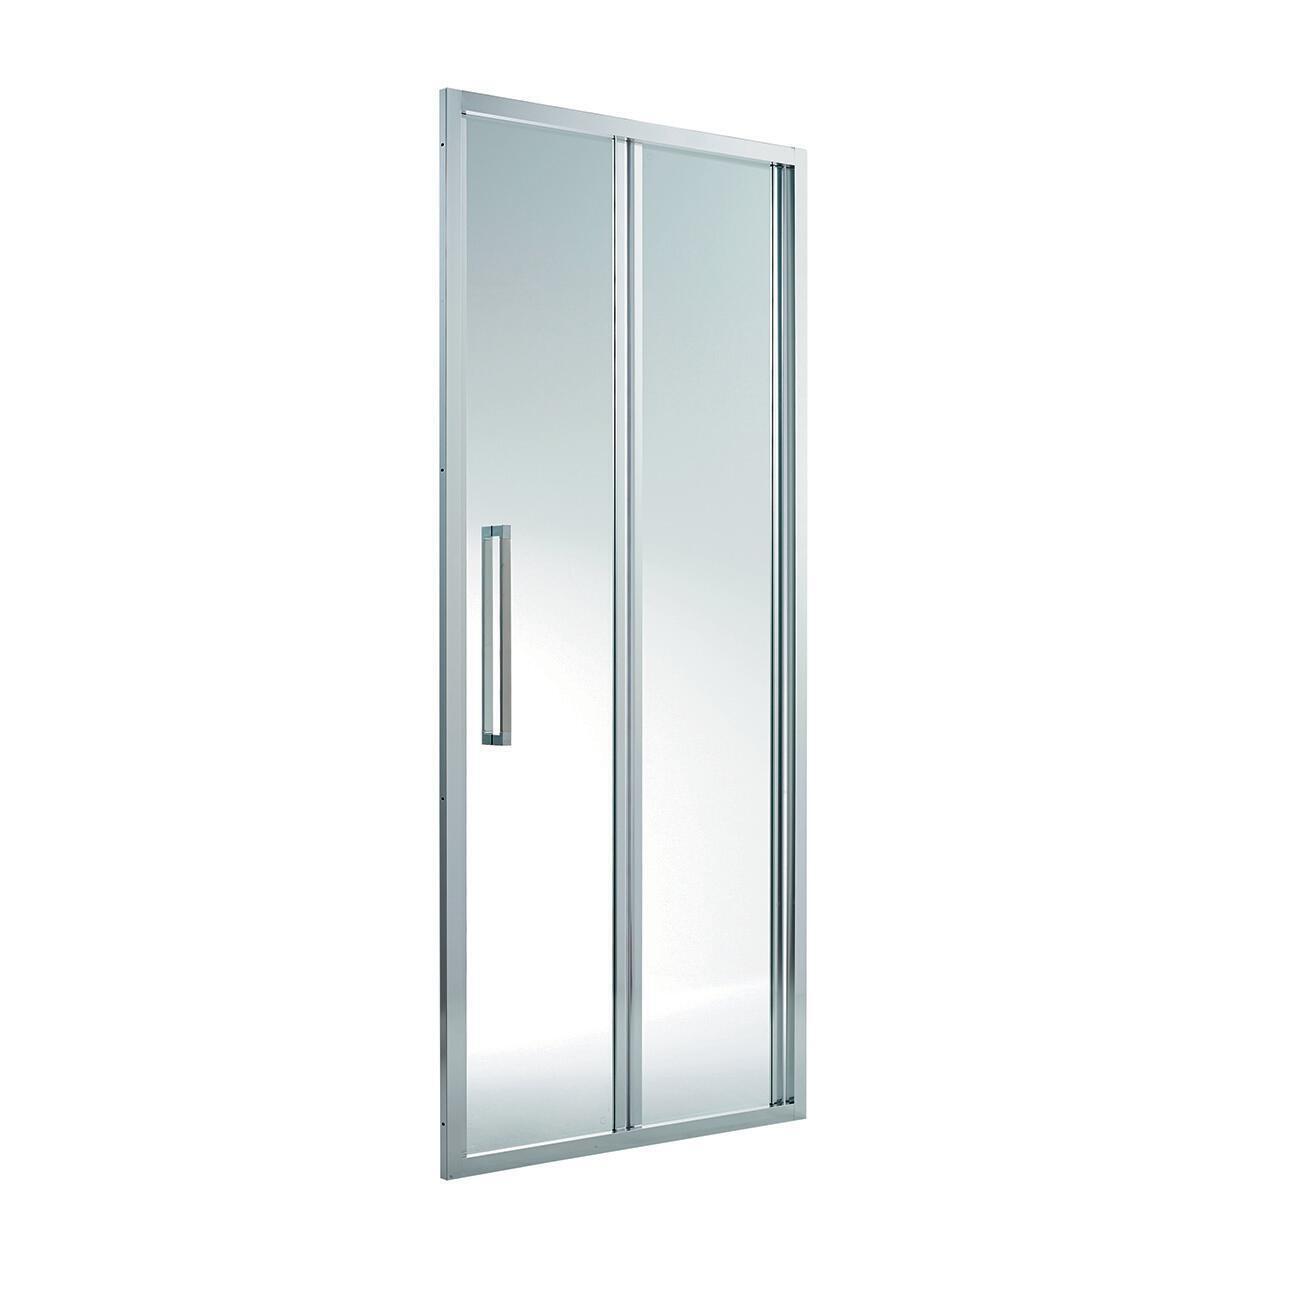 Porta doccia pieghevole PURITY3 170 cm, H 195 cm in vetro, spessore 6 mm trasparente cromato - 4